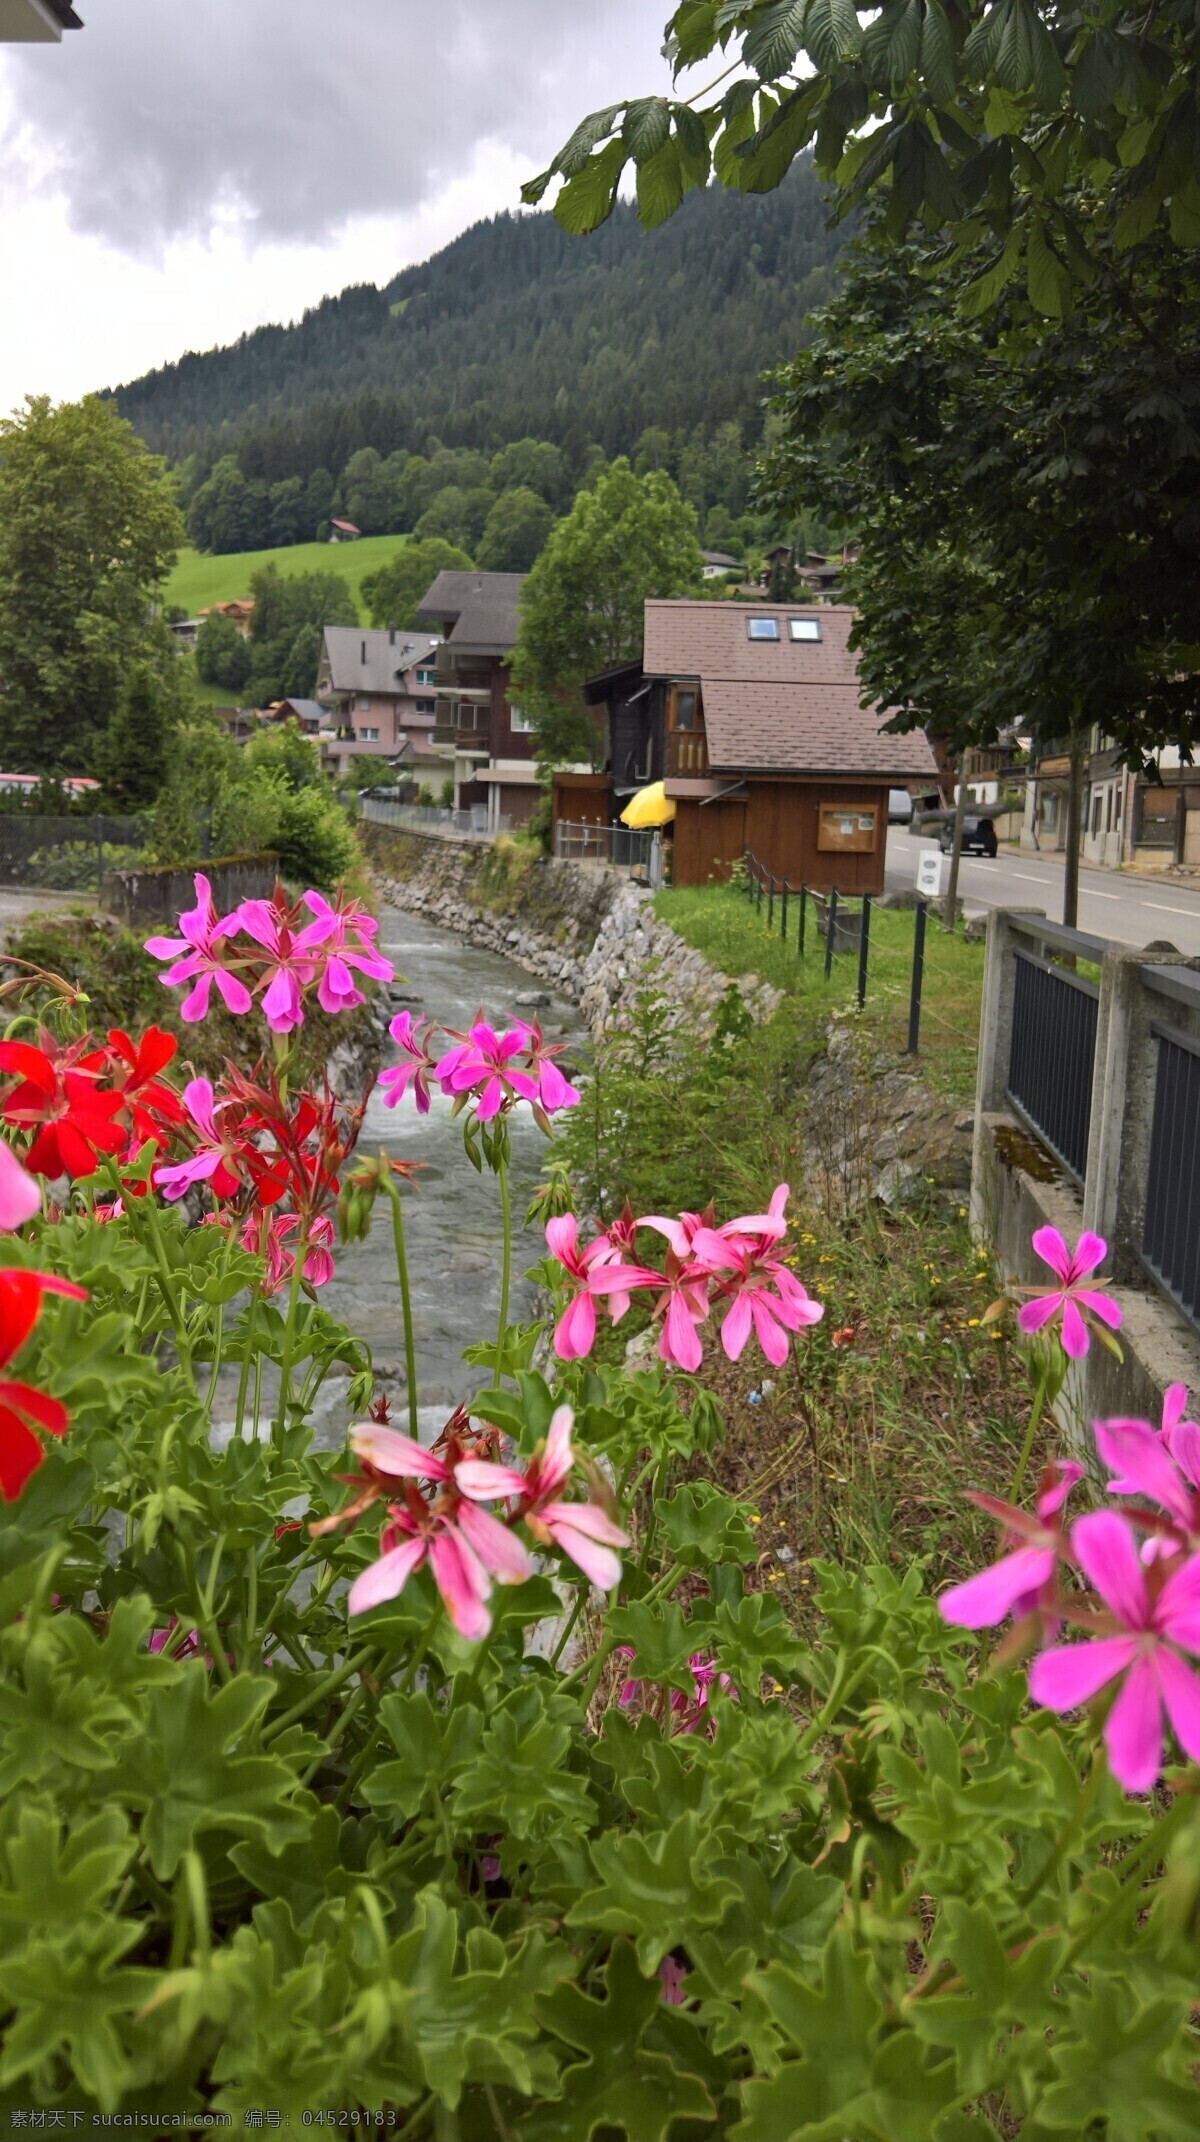 瑞士 因特 拉 肯 小镇 风光 欧洲旅游 城市风光 因特拉肯 手机摄影 瑞士风光 旅游摄影 国外旅游